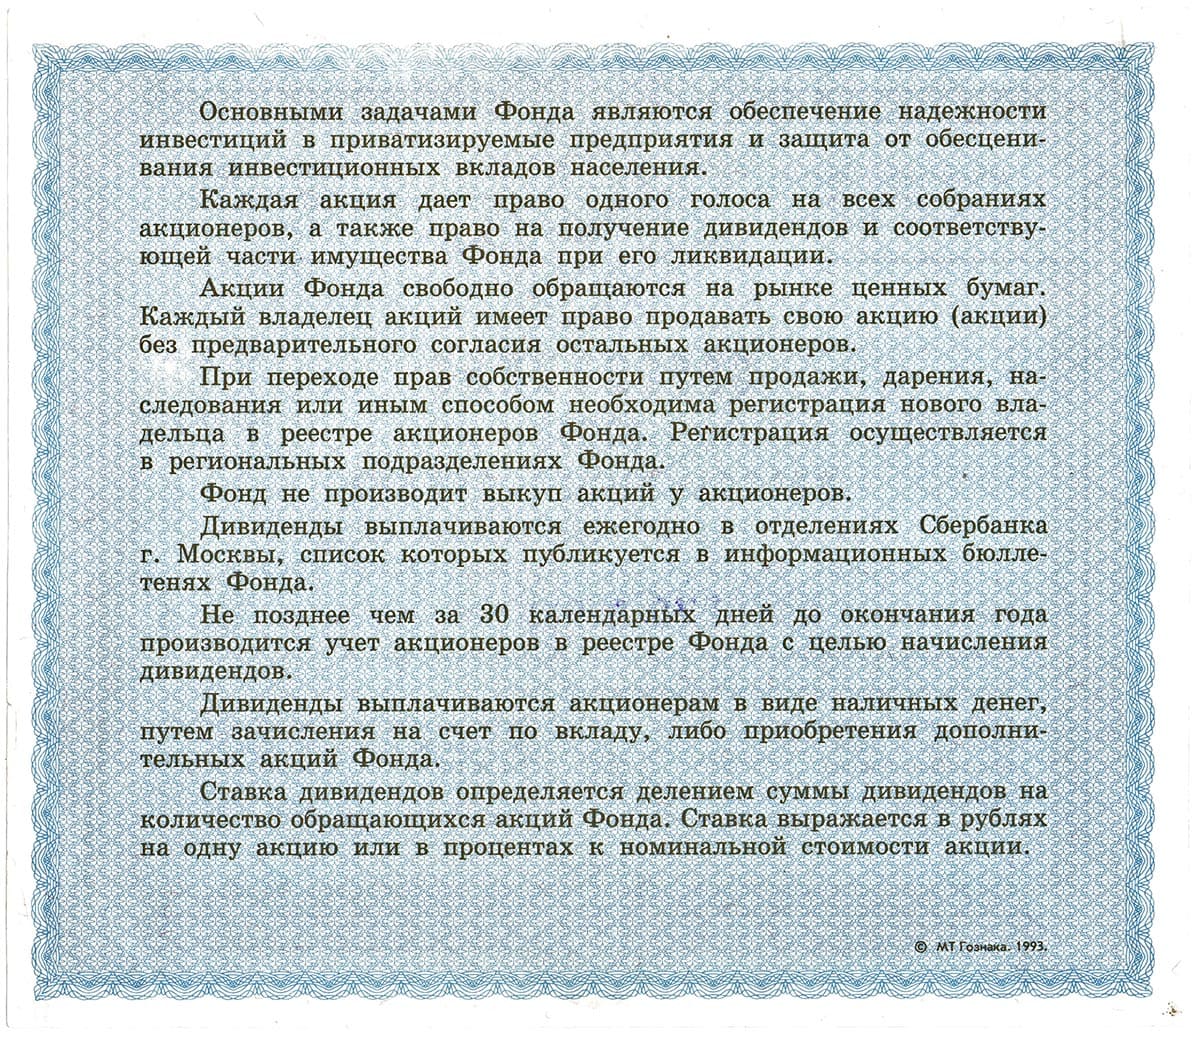 ОАО Московский чековый инвестиционный фонд. Москва. 1993.